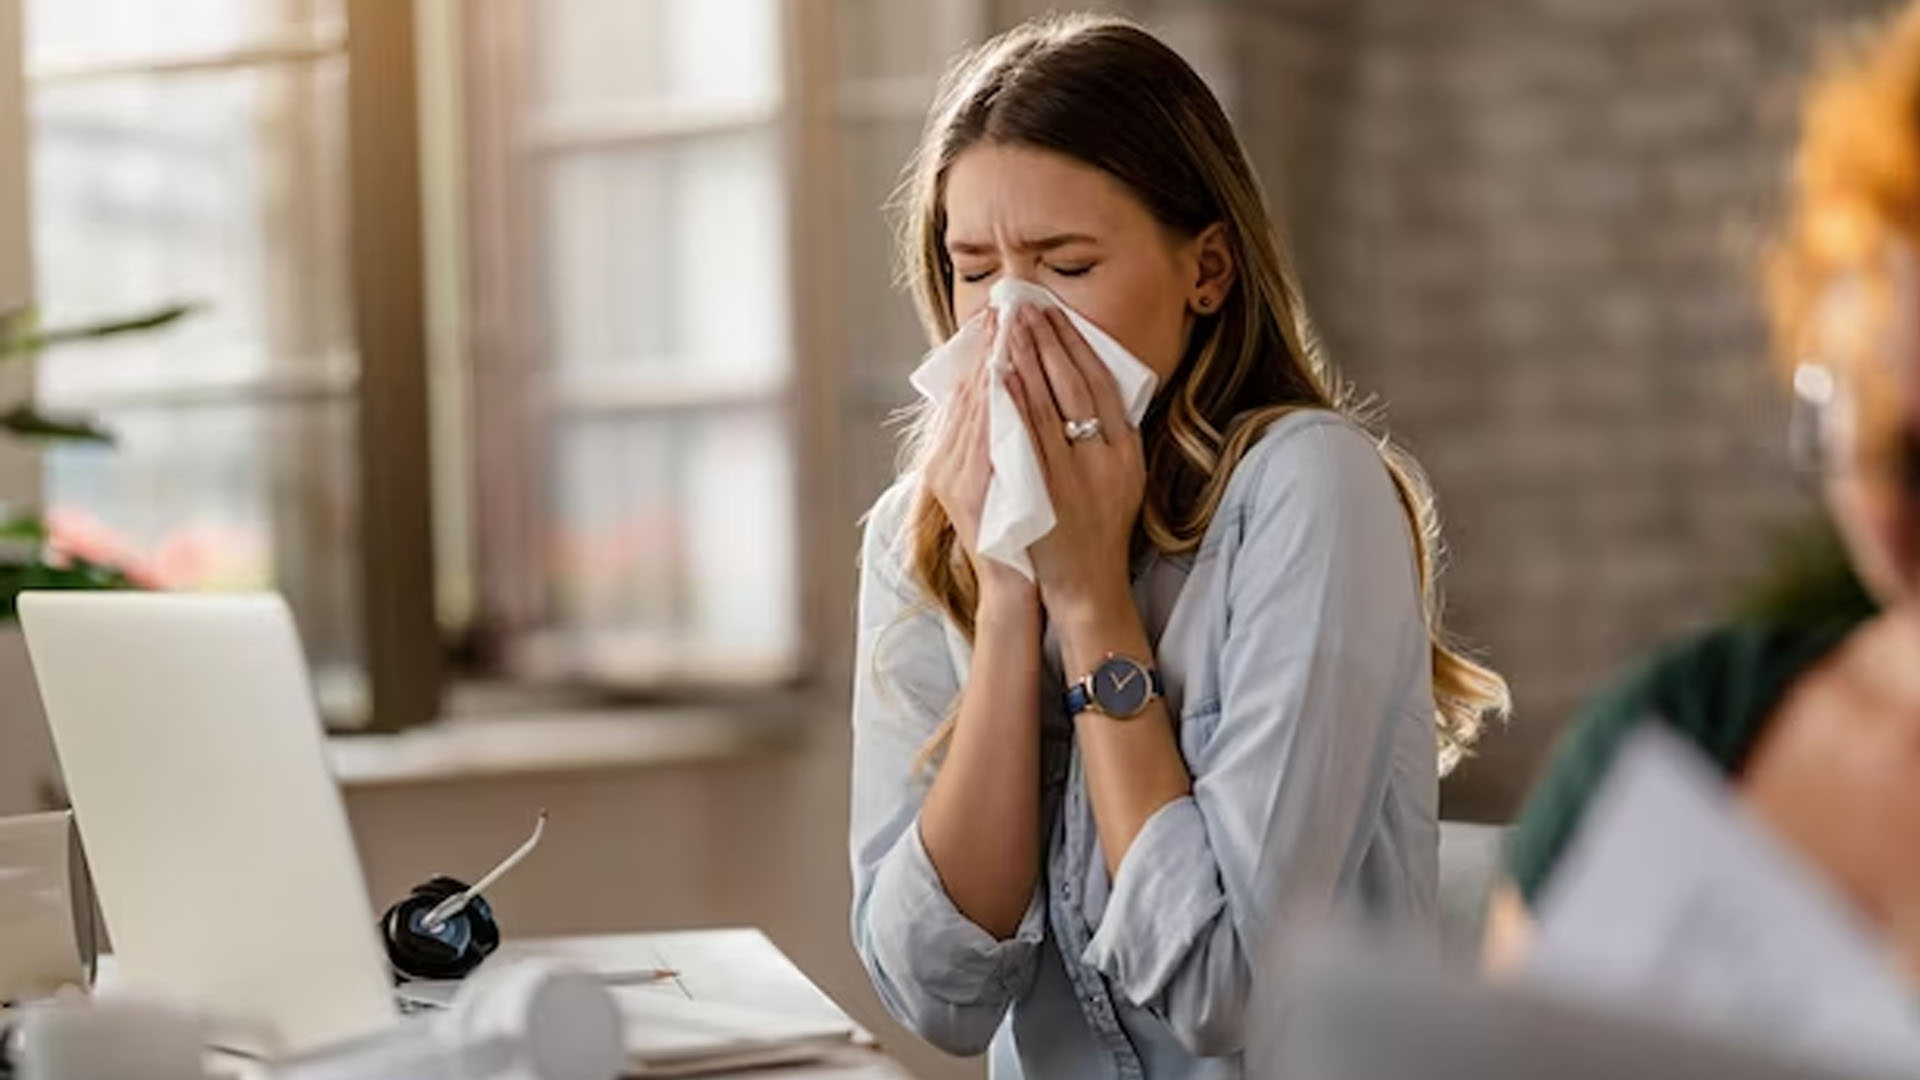 Can Seasonal Allergies Cause Flu Like Symptoms?